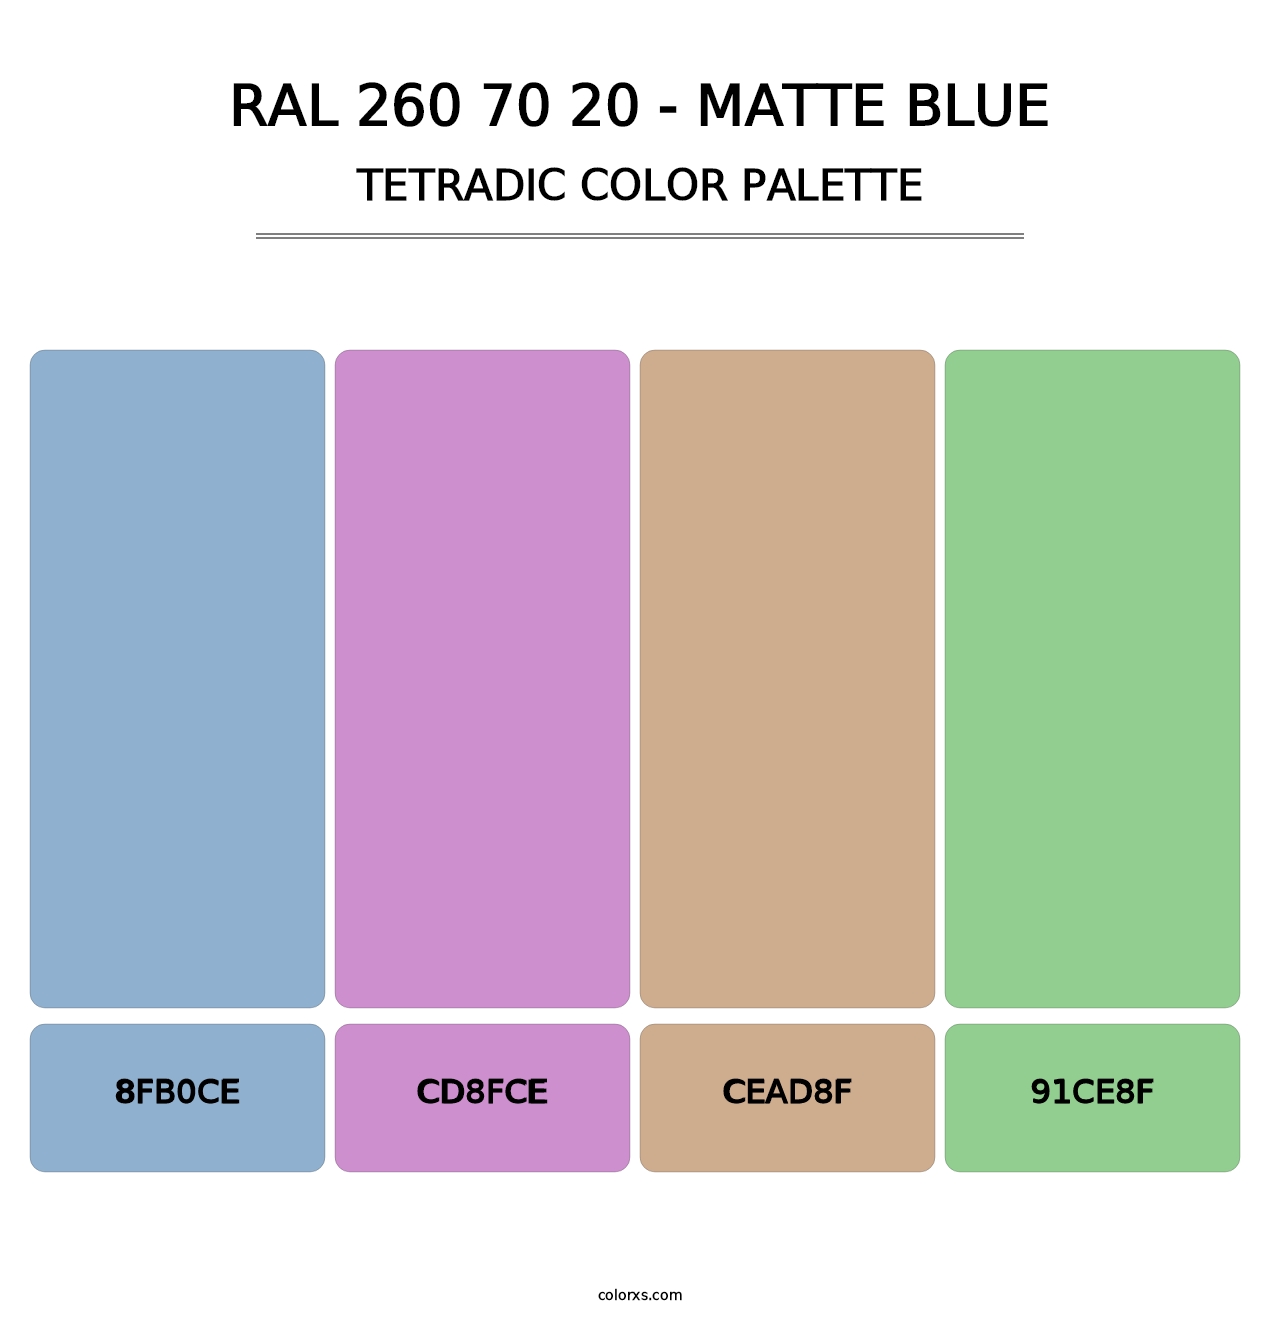 RAL 260 70 20 - Matte Blue - Tetradic Color Palette